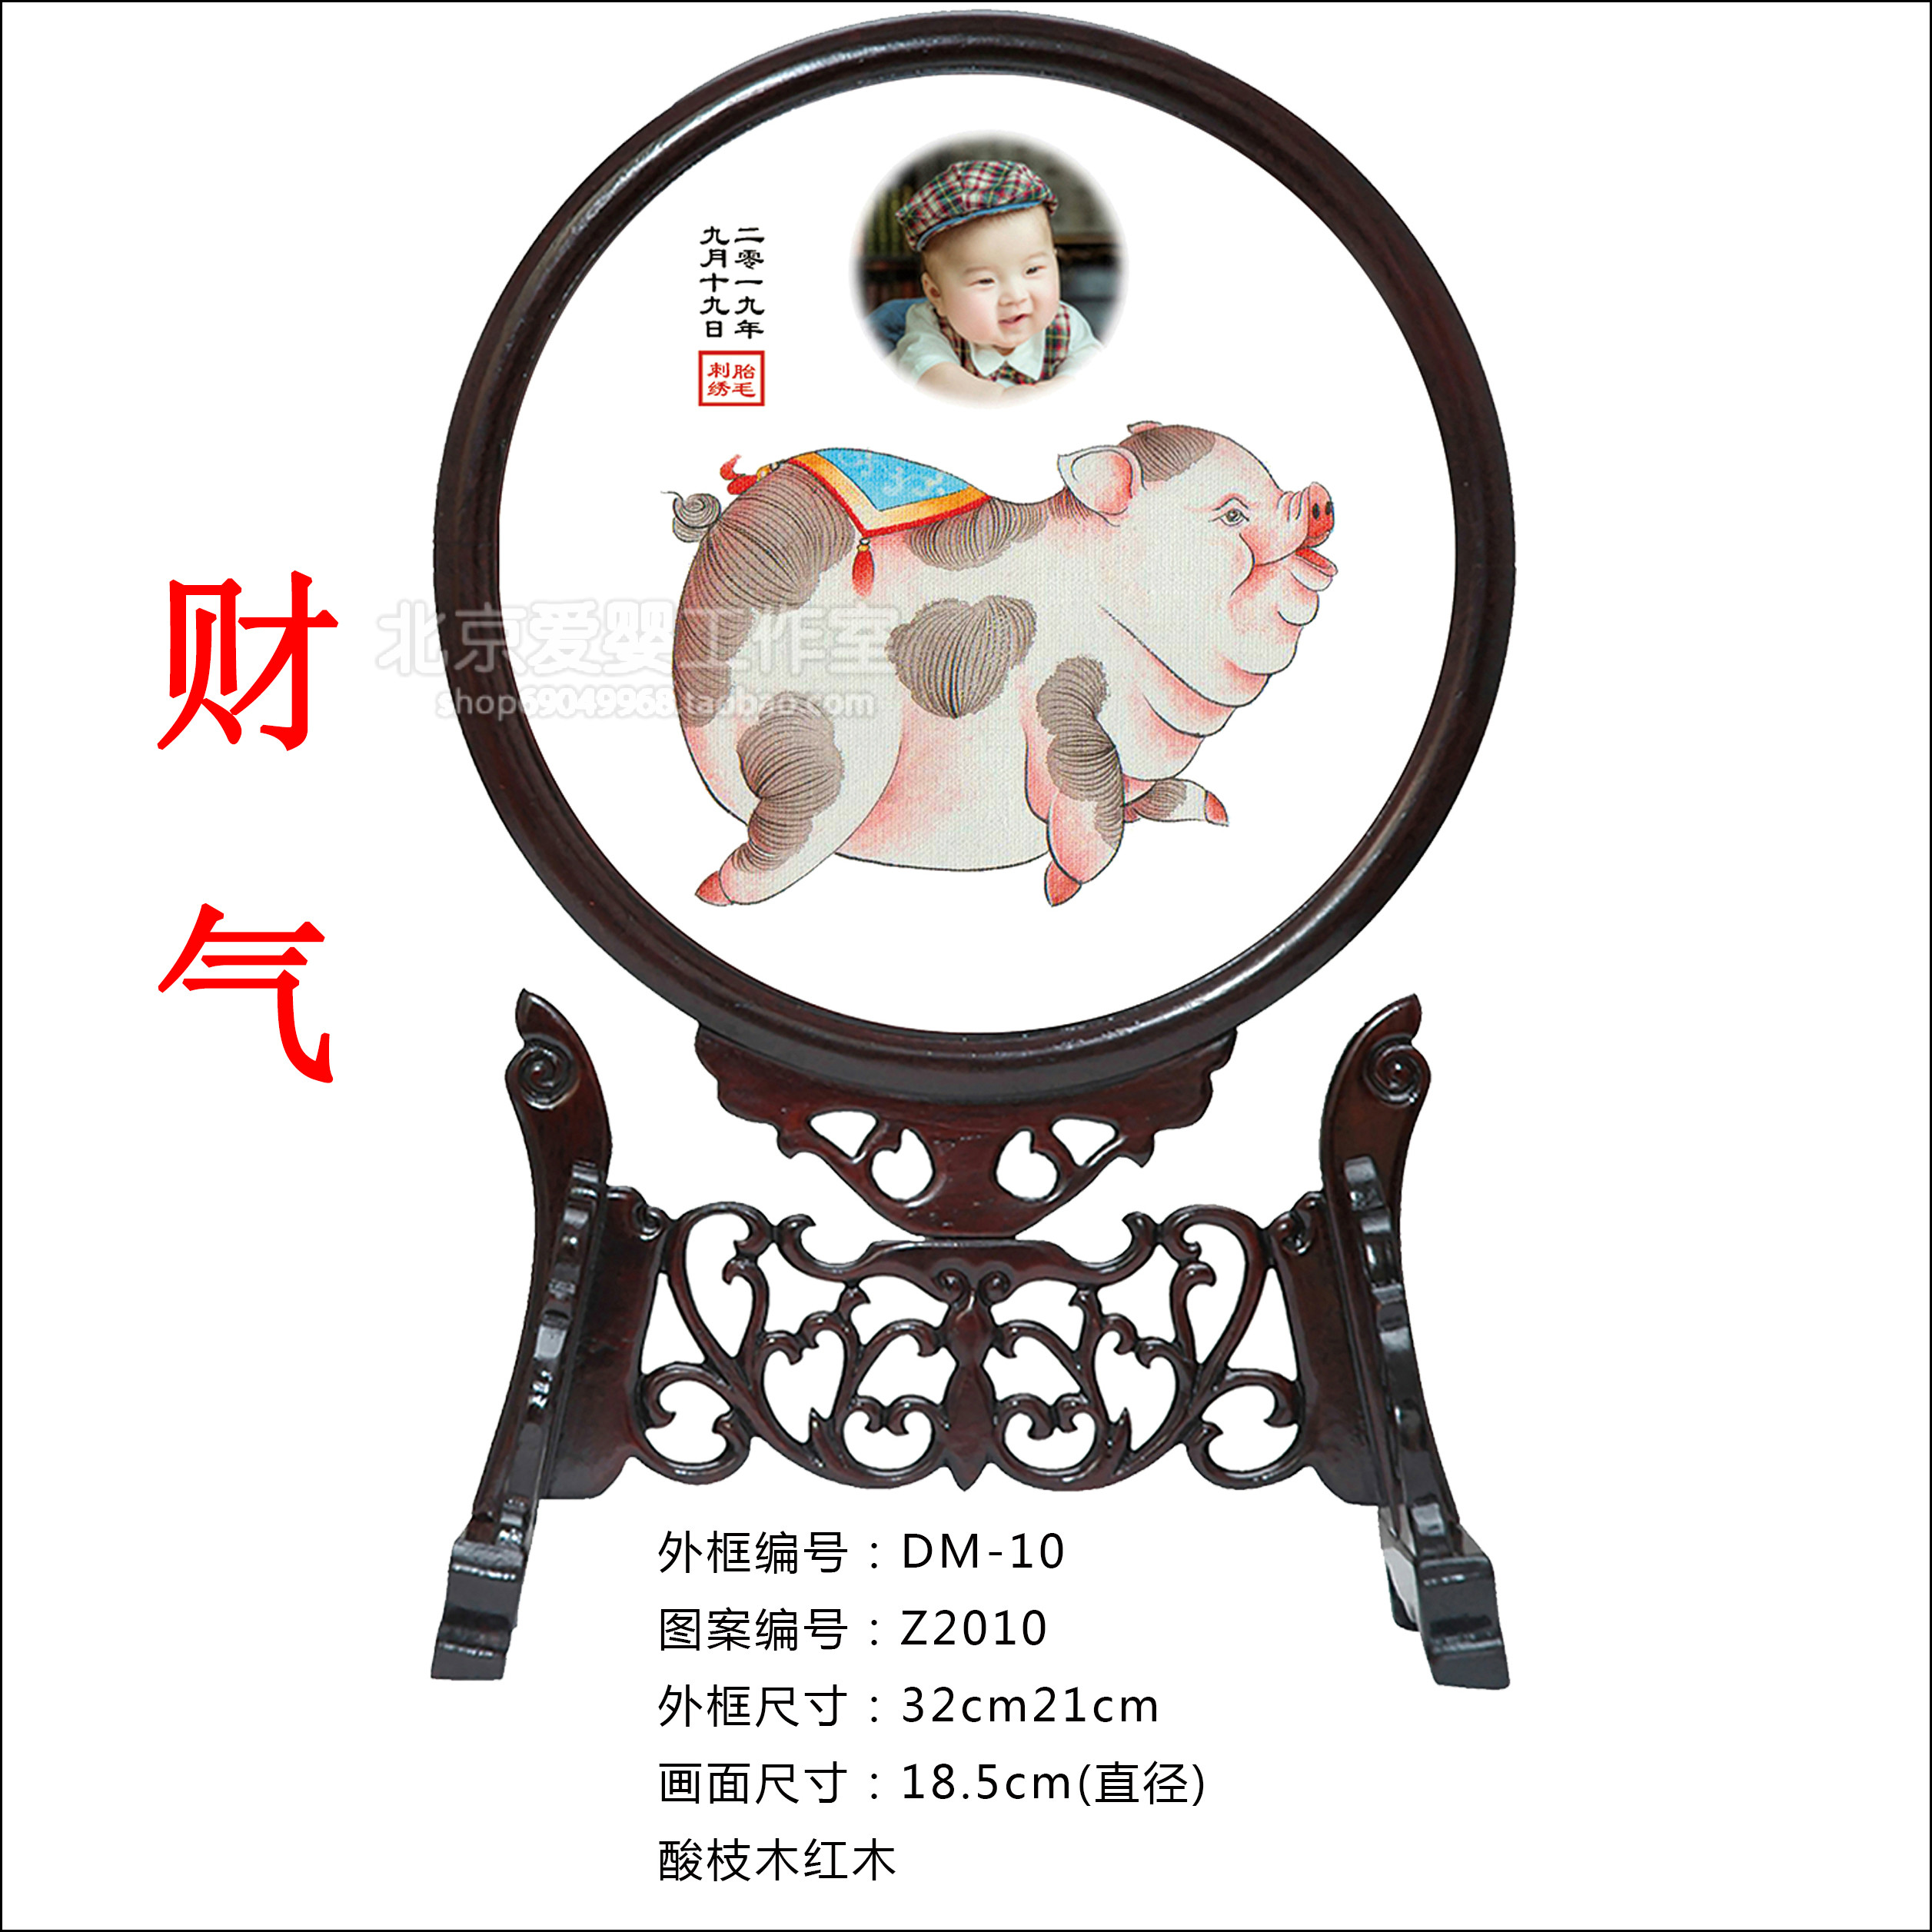 新生儿新款中性满月礼物2019猪年生肖胎毛绣 北京市区上门理胎发